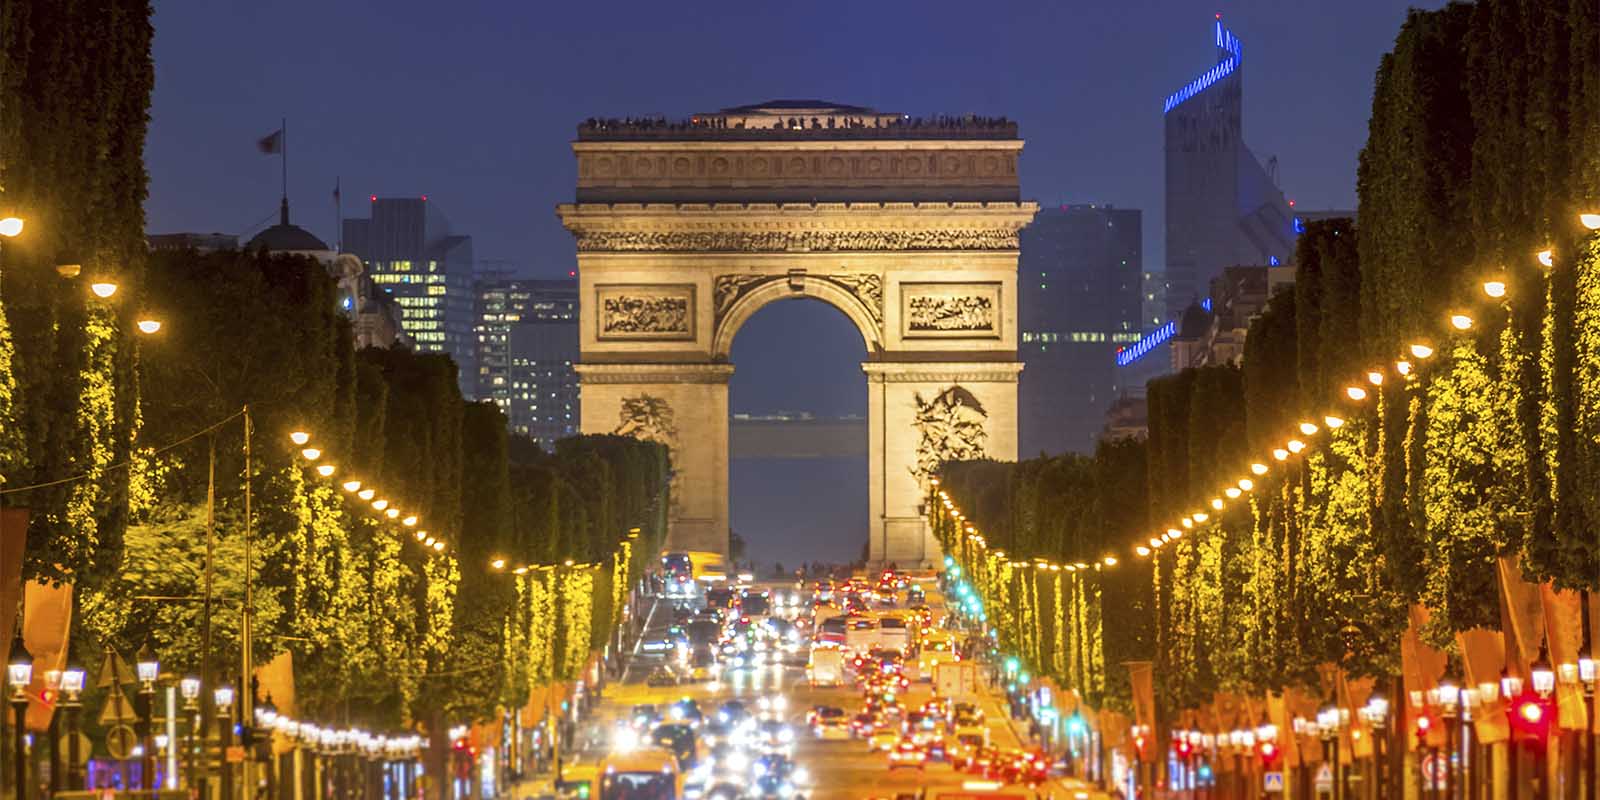 Champs Elysees & Famous Arc de Triomphe in Paris